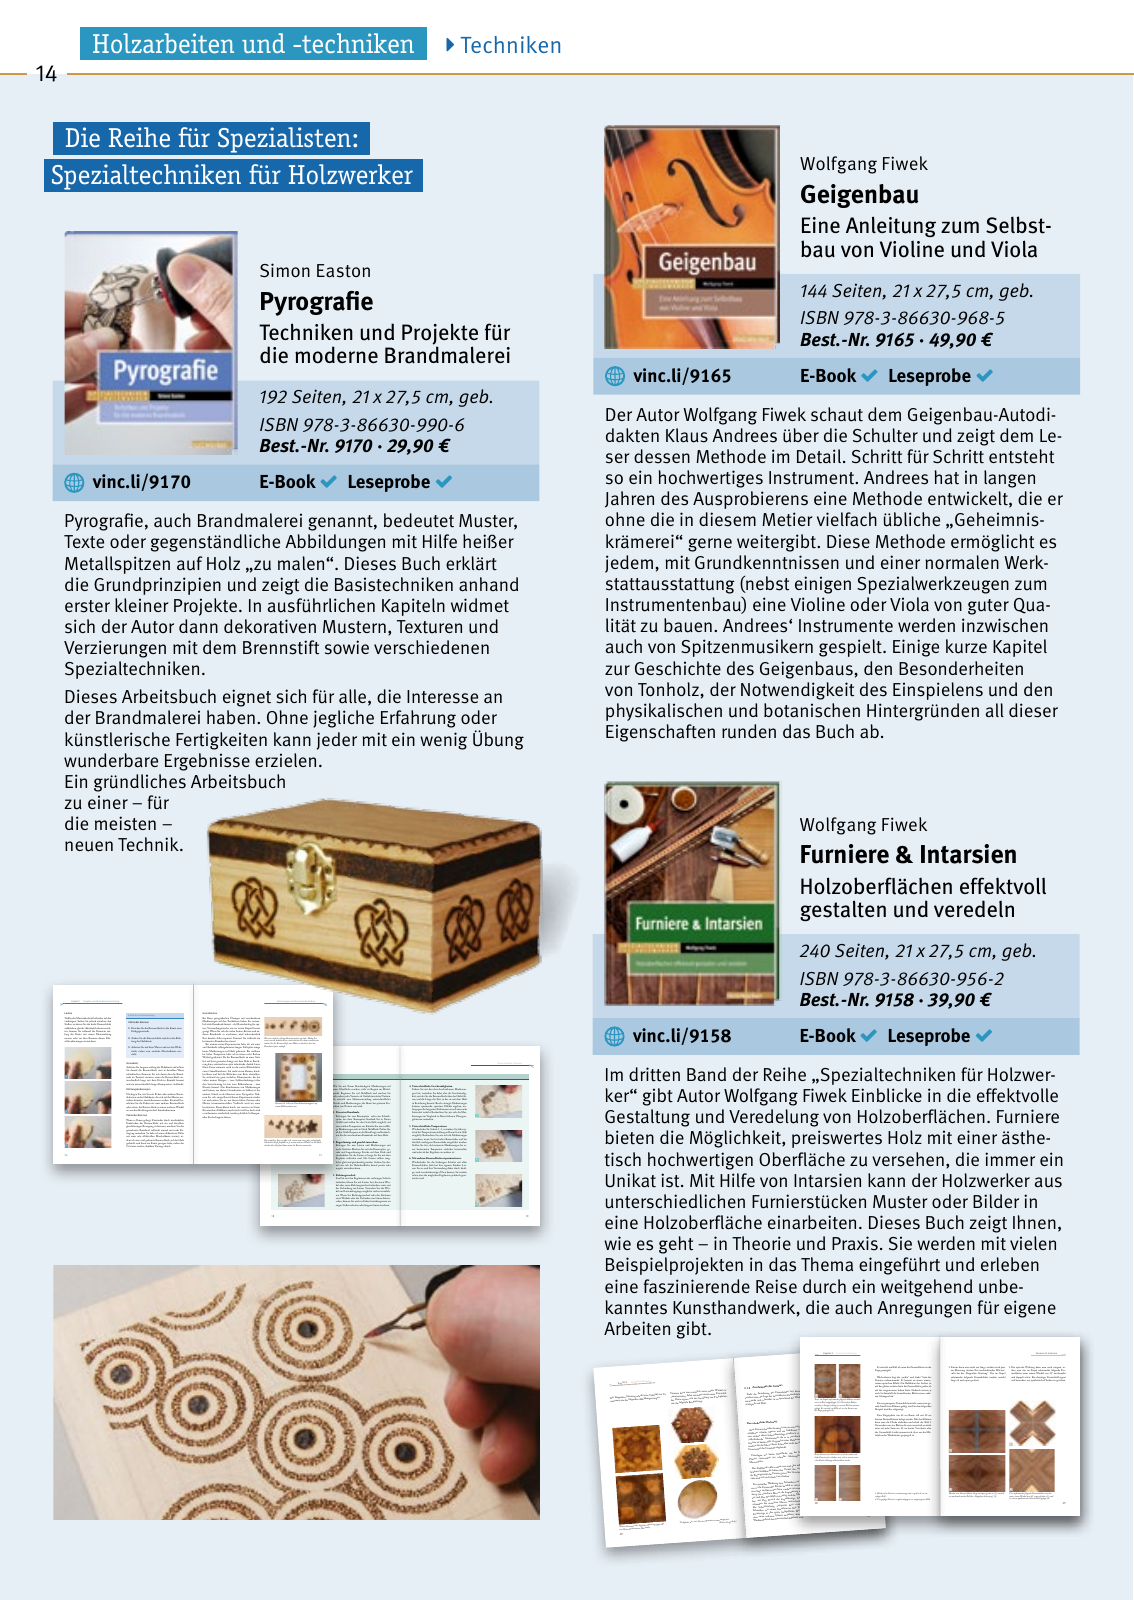 Vorschau HolzWerken Katalog 2019 Seite 14